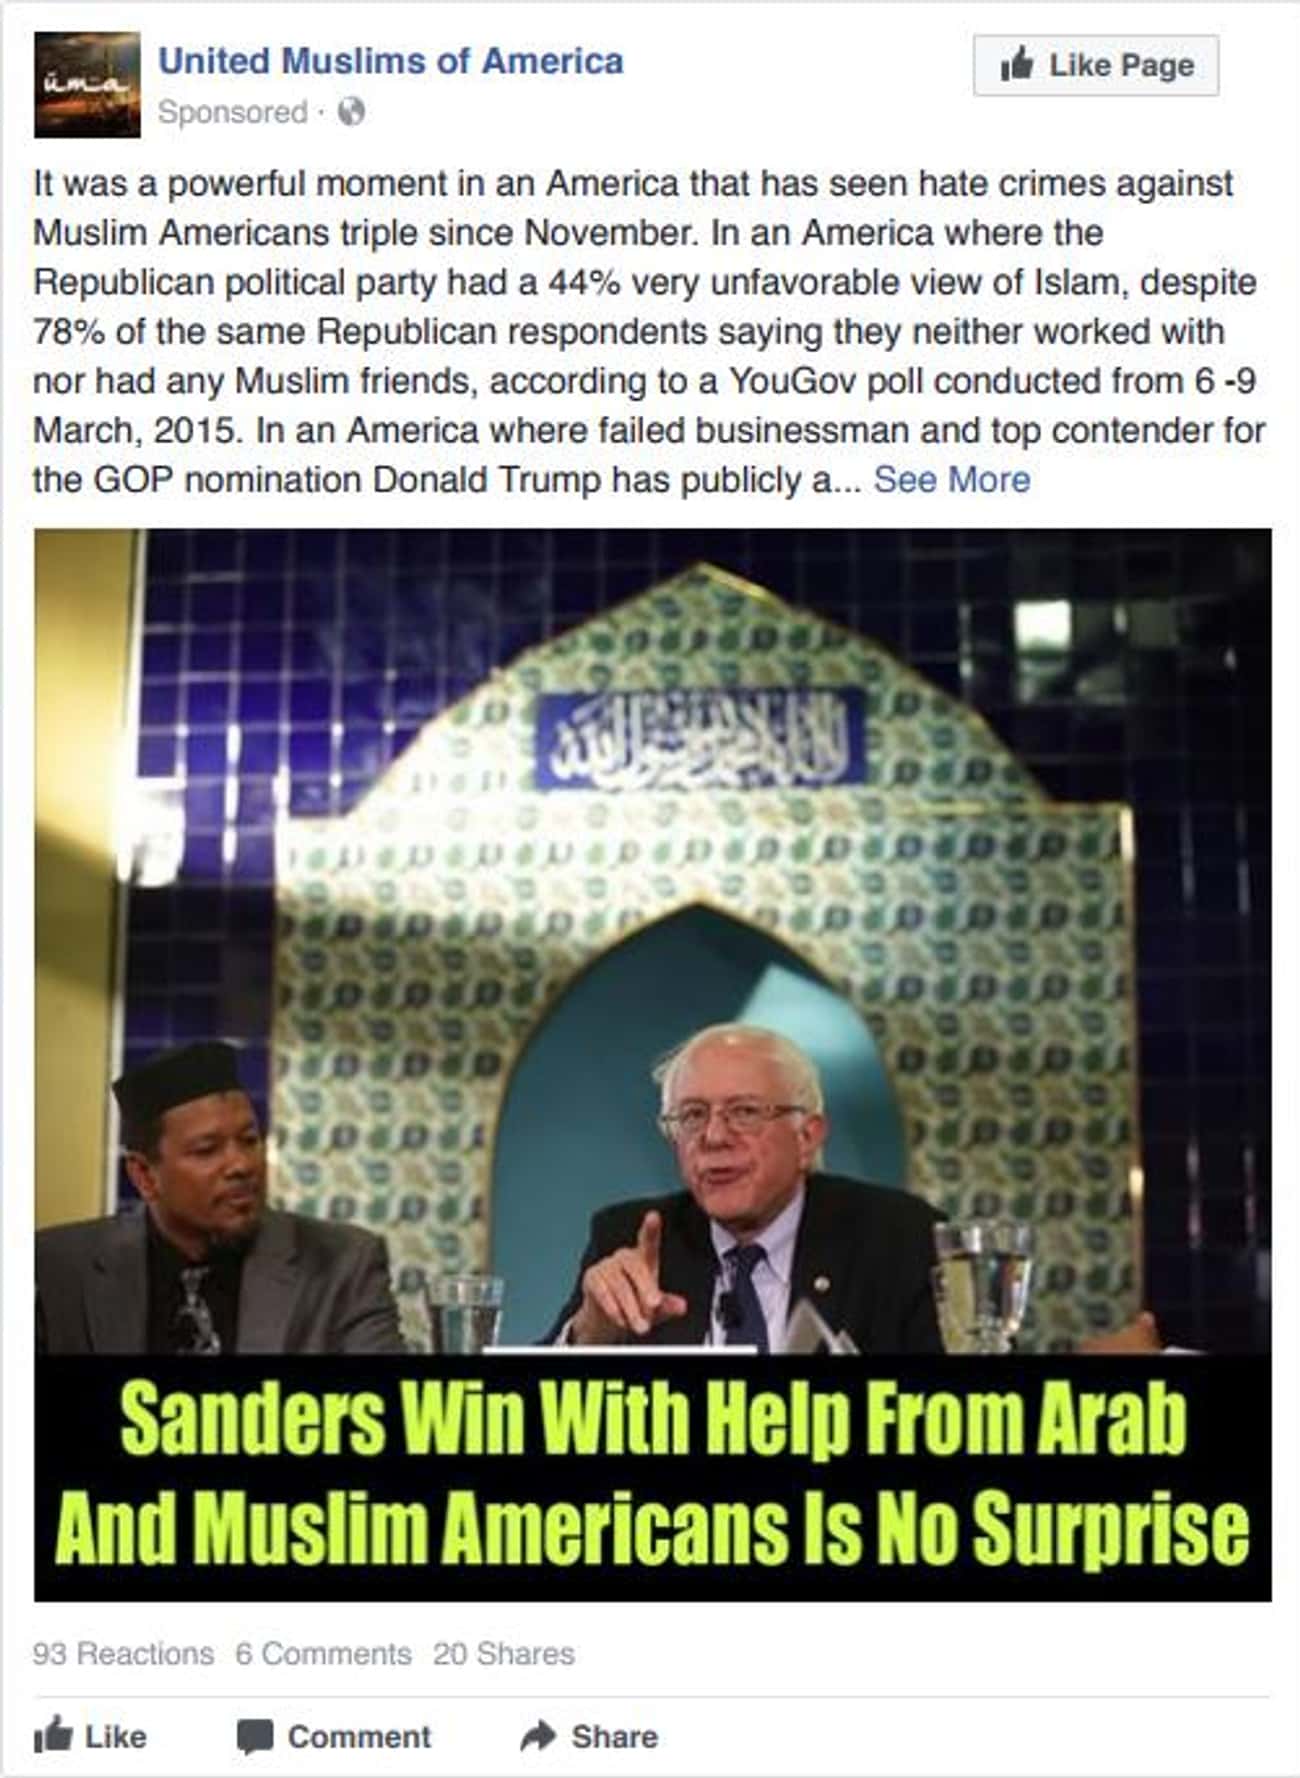 Sanders Has The Muslim And Arab Vote